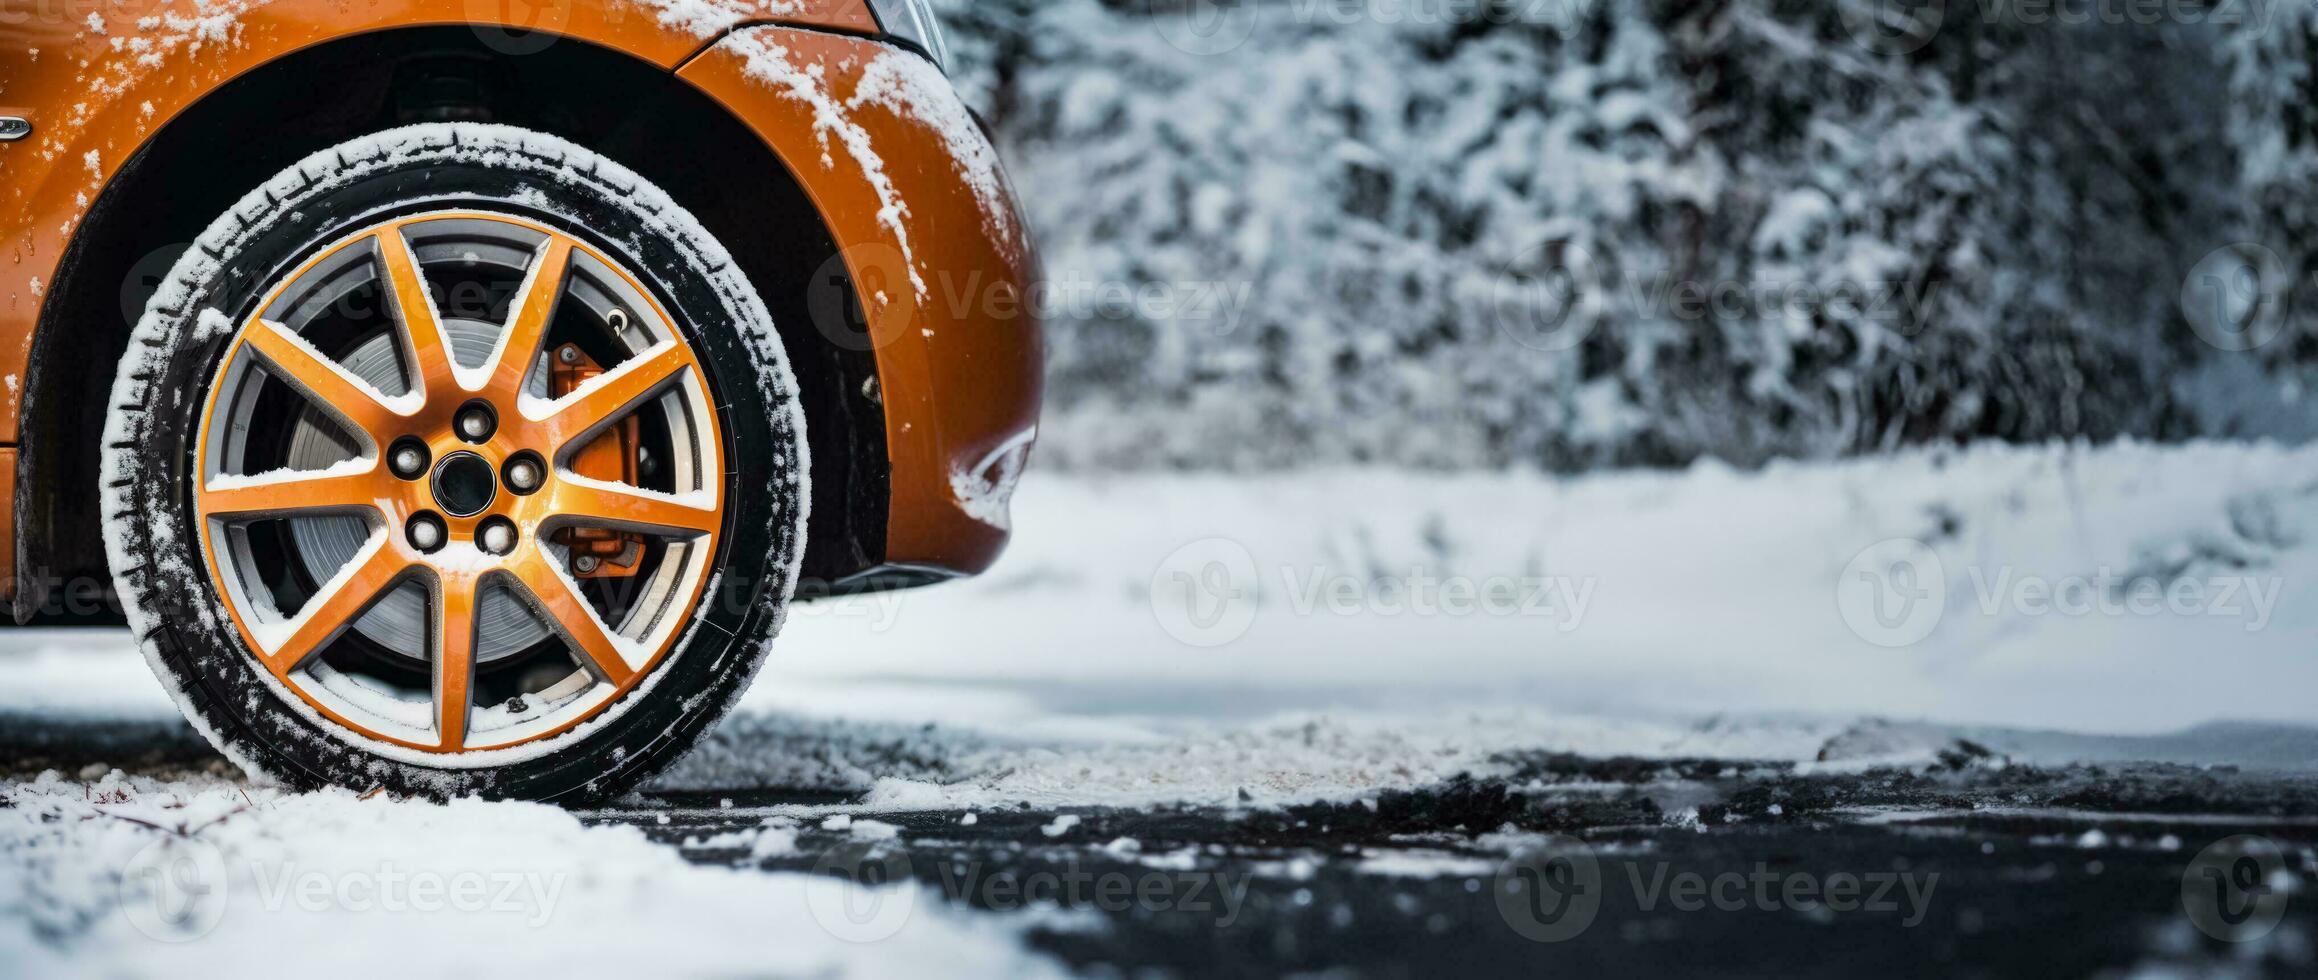 Rad von ein Auto im Schnee foto